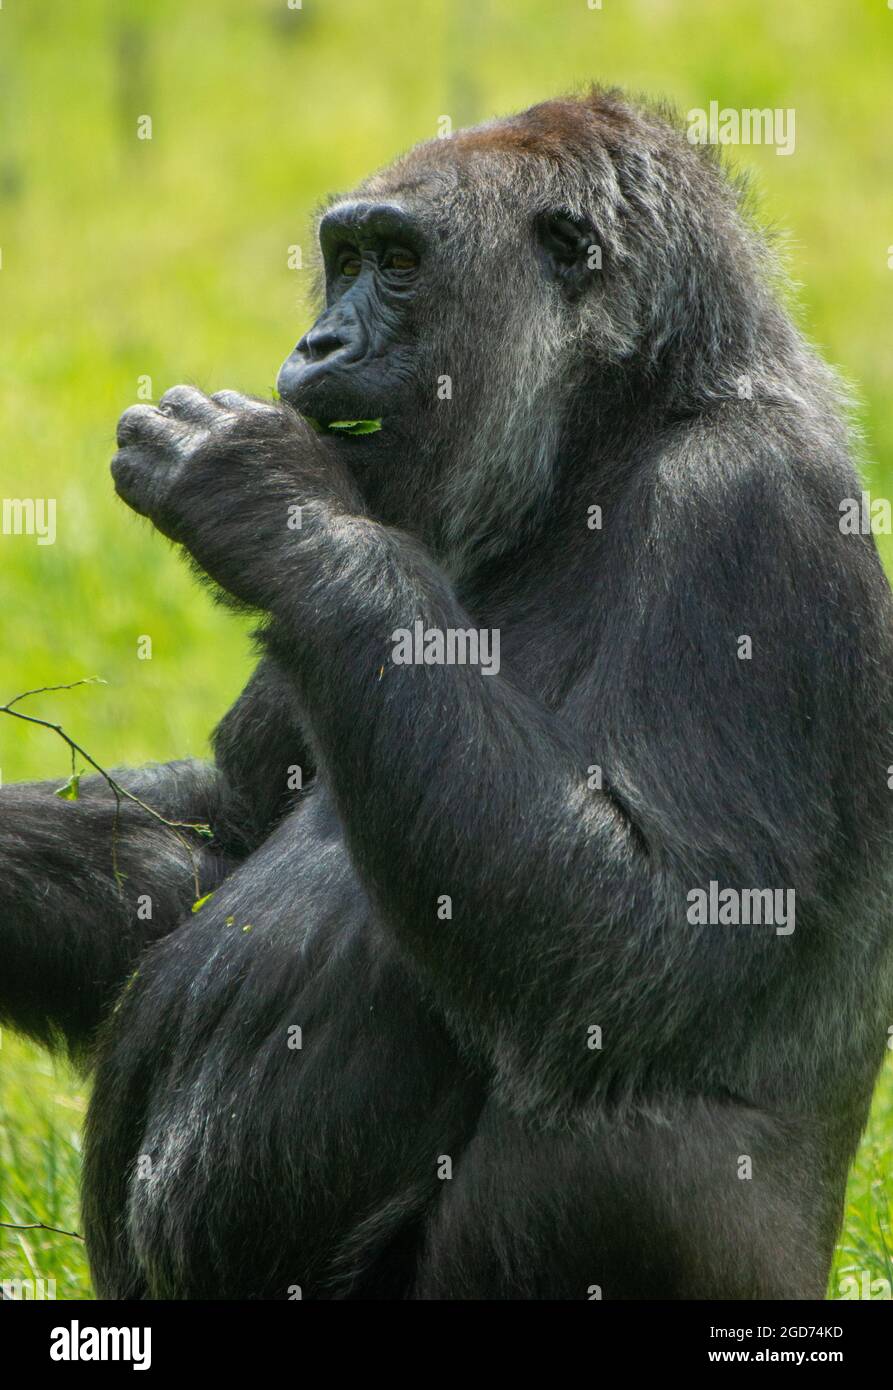 Gorila comiendo en el sol Foto de stock